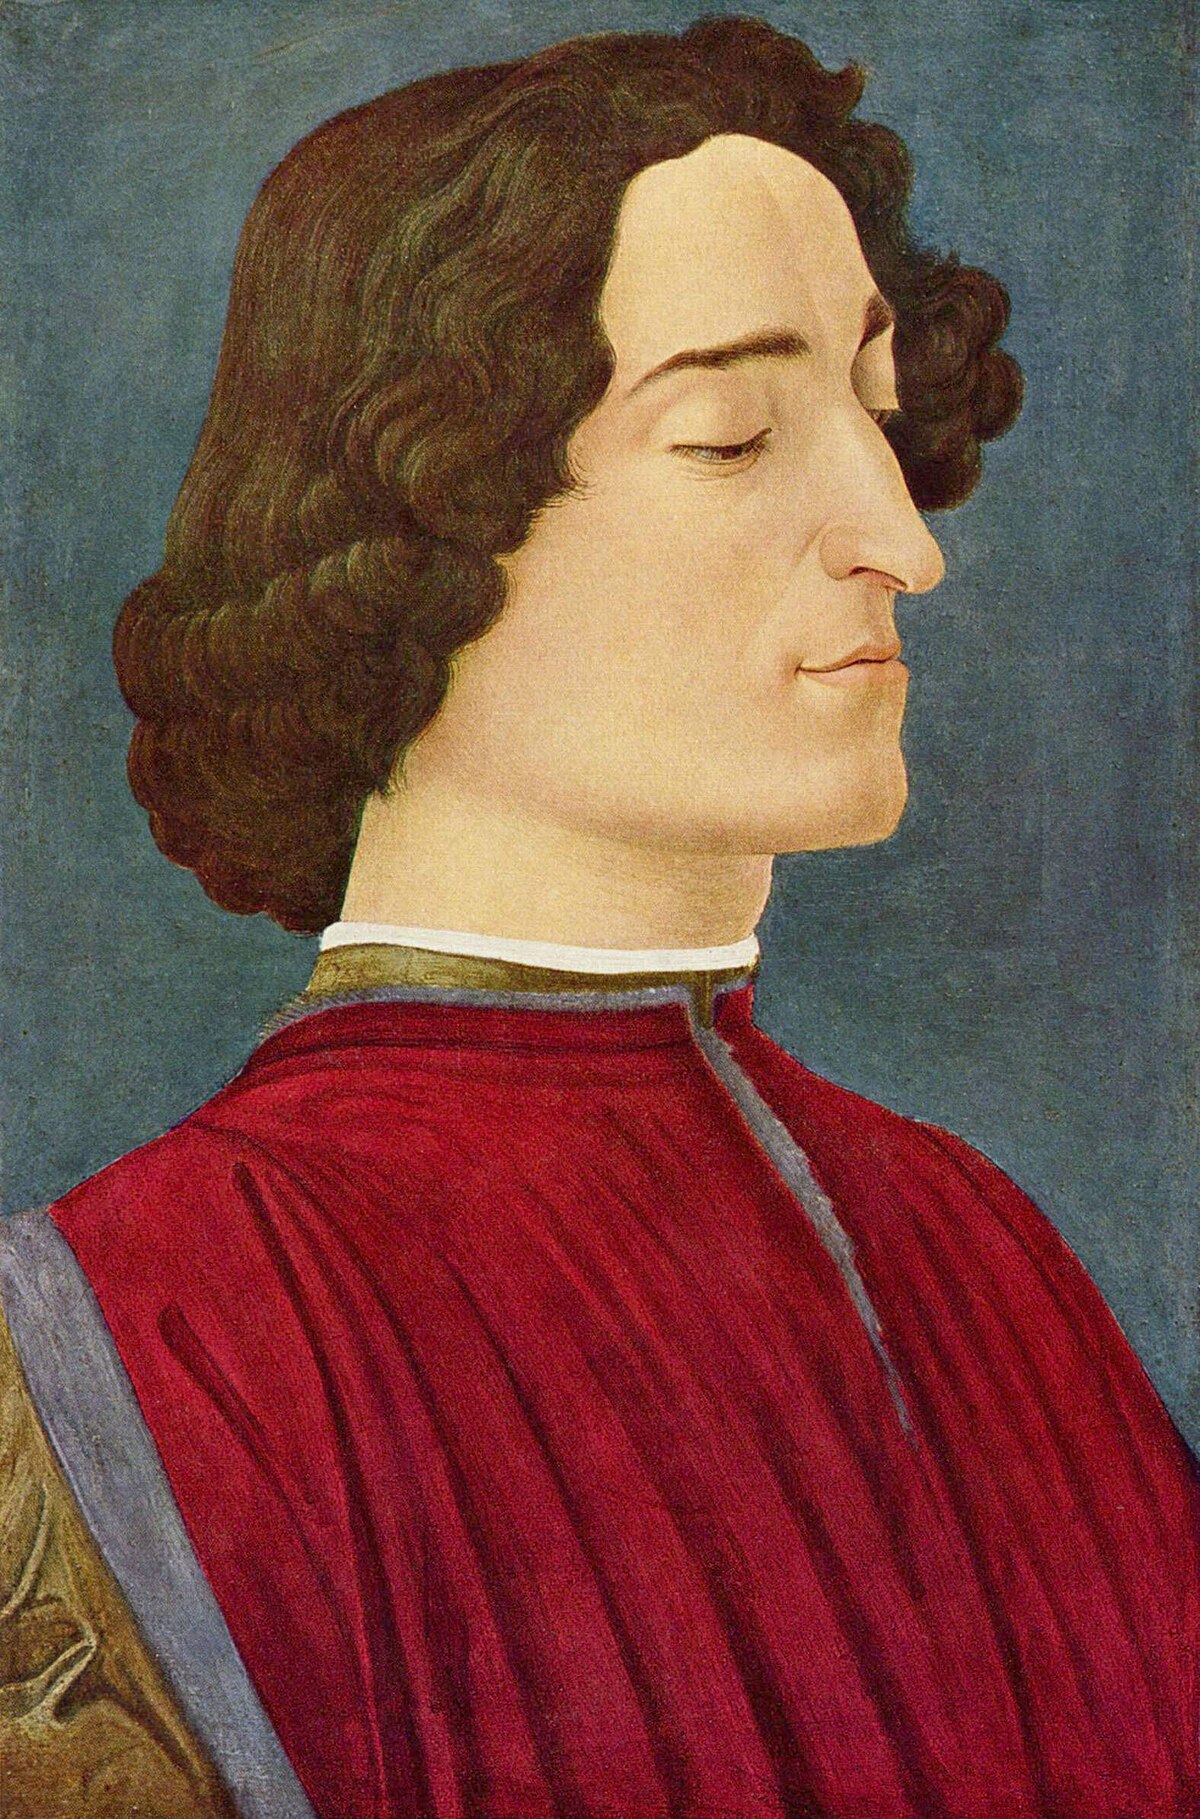 ジュリアーノ・デ・メディチの肖像 (絵画館) - Wikipedia